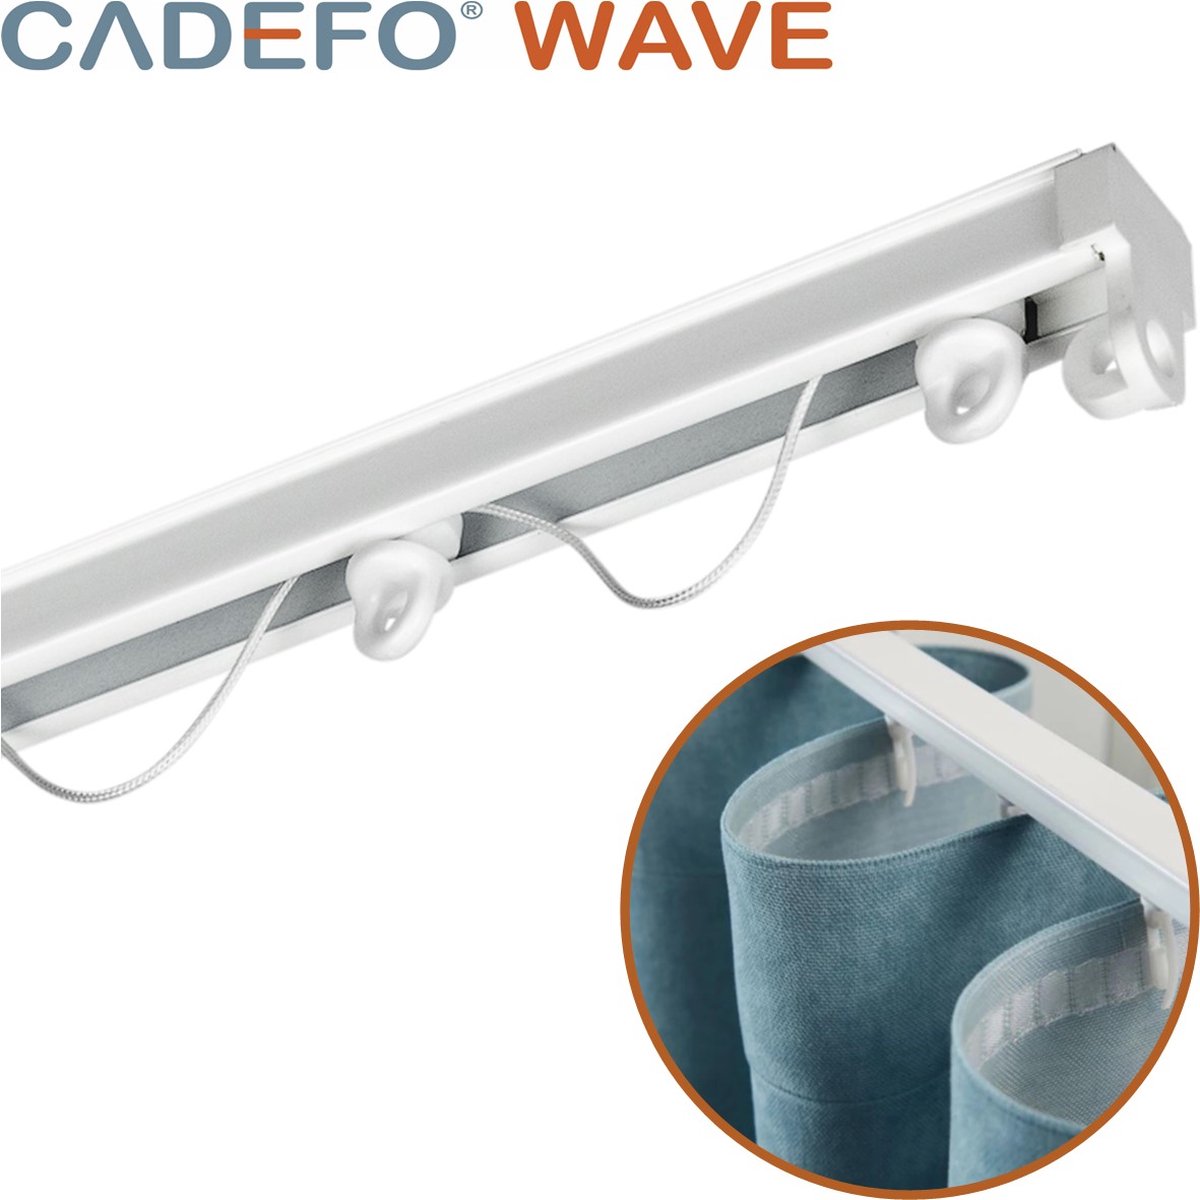 CADEFO WAVE (551 - 600 cm) Gordijnrails - Compleet op maat! - UIT 1 STUK - Leverbaar tot 6 meter - Plafondbevestiging - Lengte 571 cm